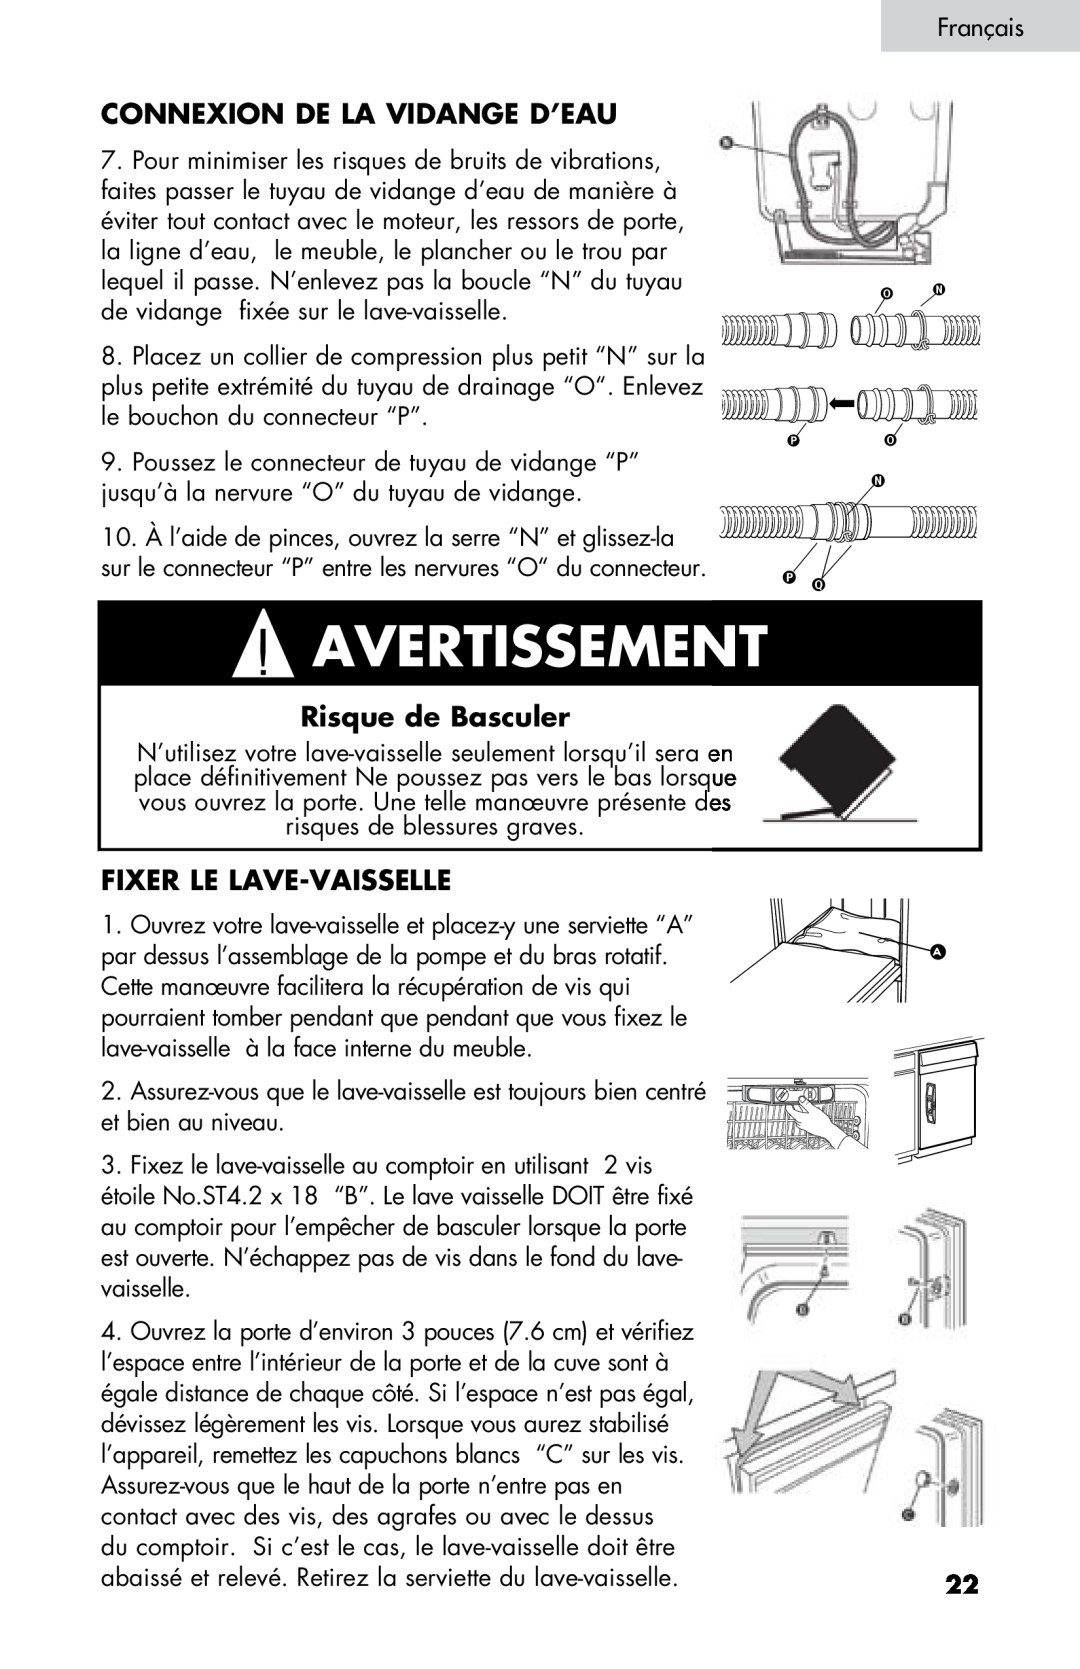 Haier DW-7777-01 manual Connexion De La Vidange D’Eau, Risque de Basculer, Fixer Le Lave-Vaisselle, Avertissement 